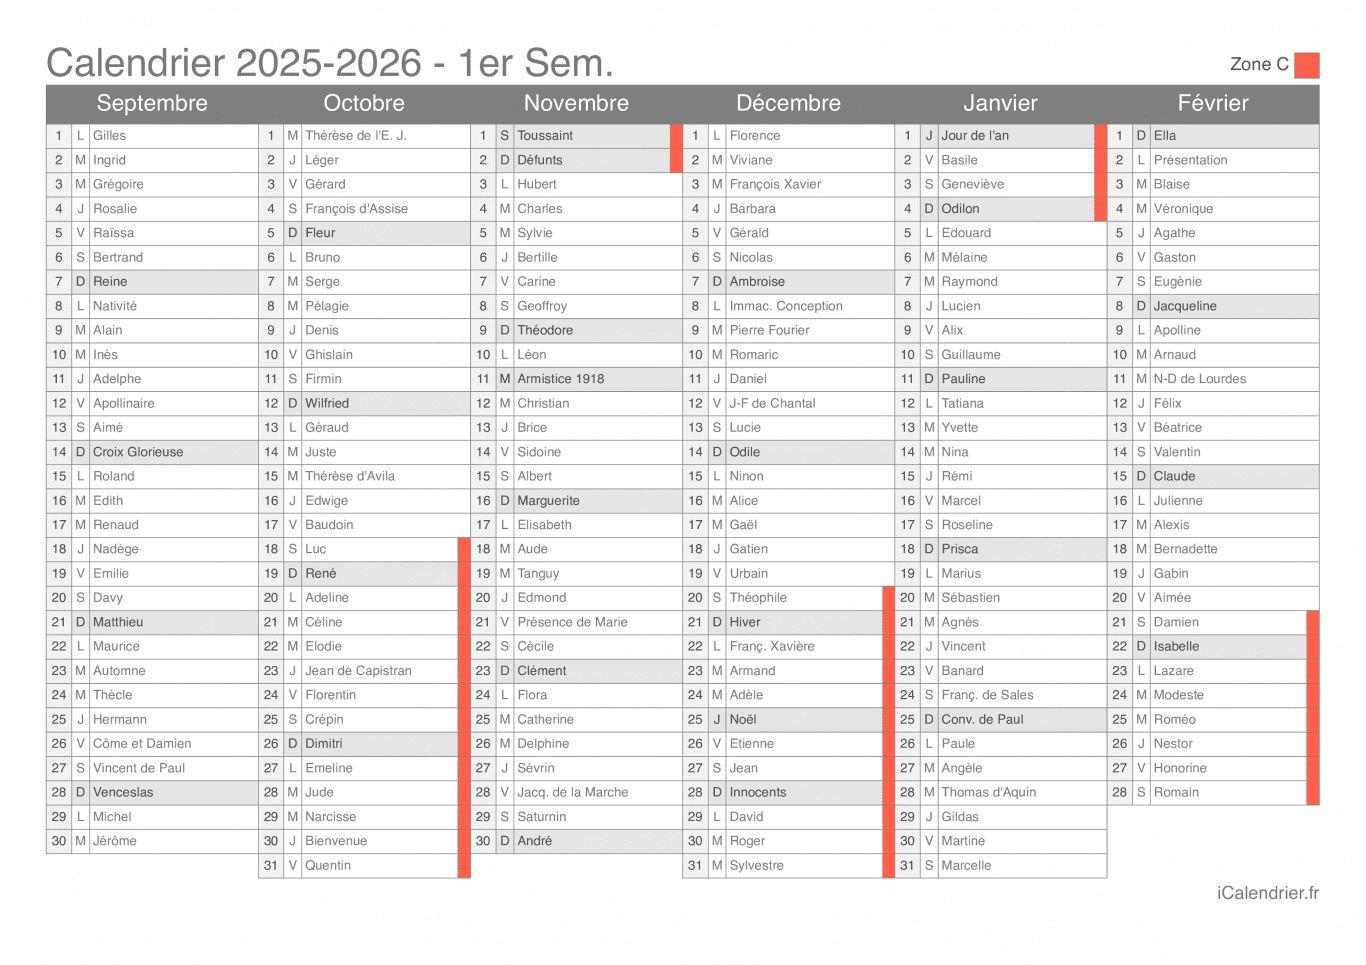 Calendrier des vacances scolaires 2025-2026 par semestre, zone C, avec fête du jour